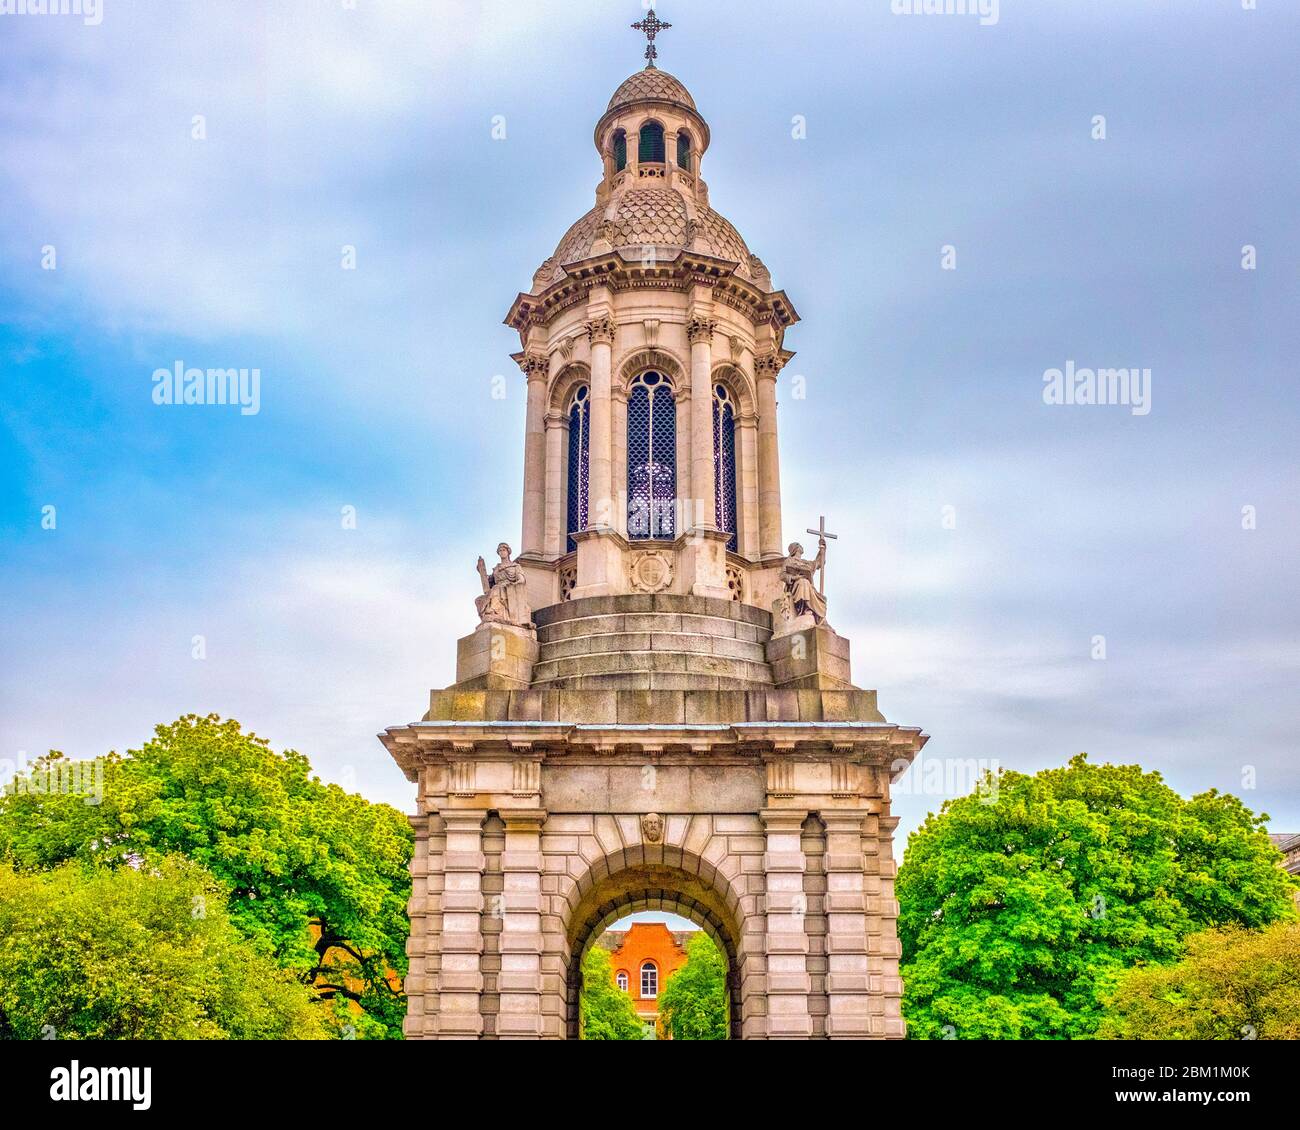 Campanile de Trinity College, Dublín, Irlanda Foto de stock